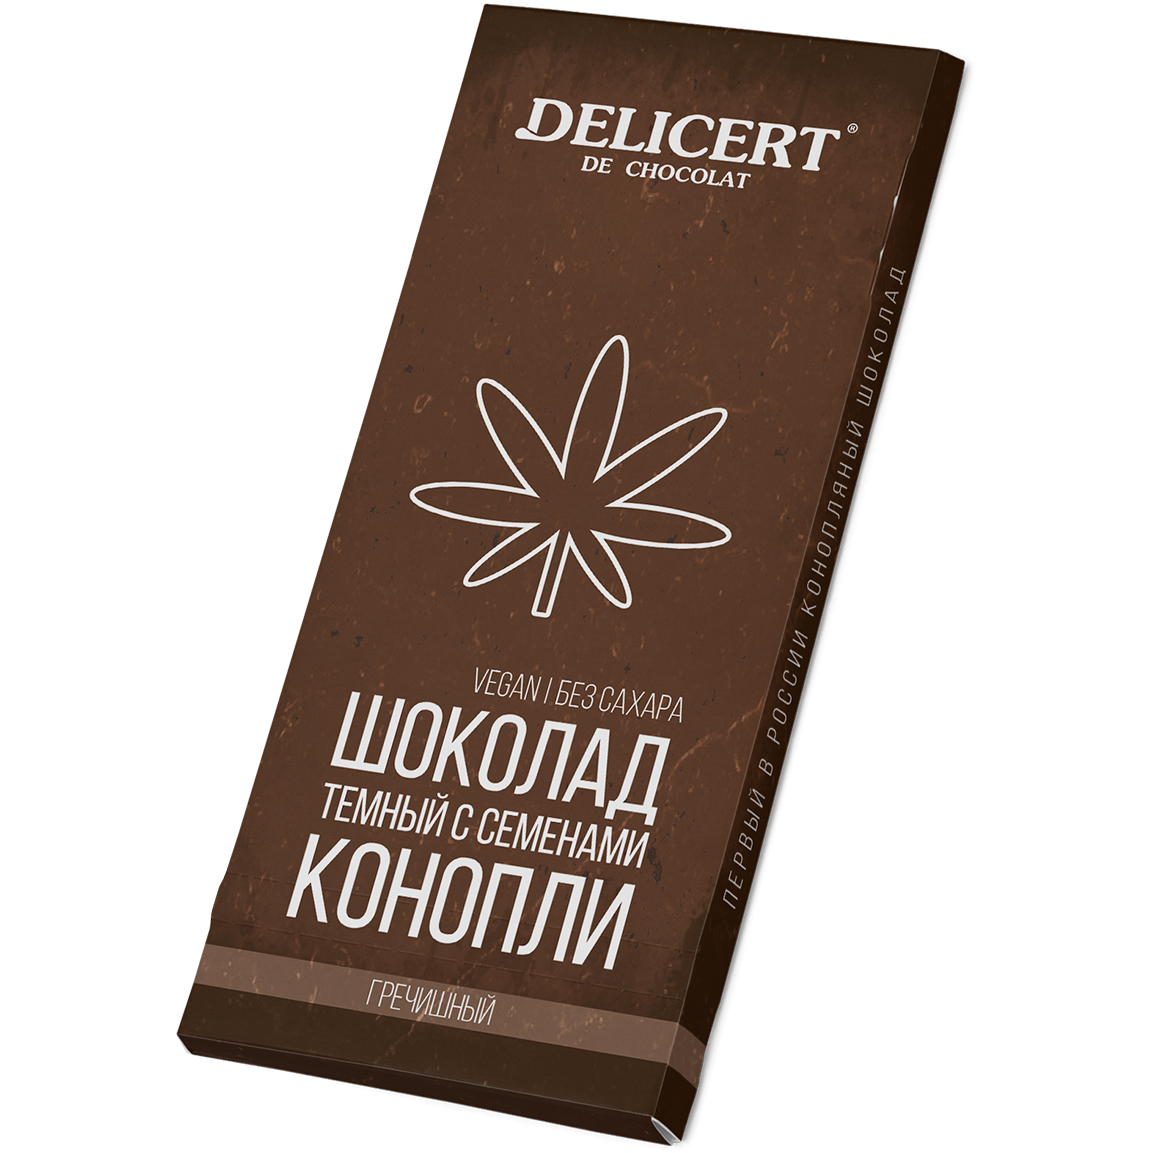 Тёмный гречишный шоколад с семенами Конопли, 80 гр.